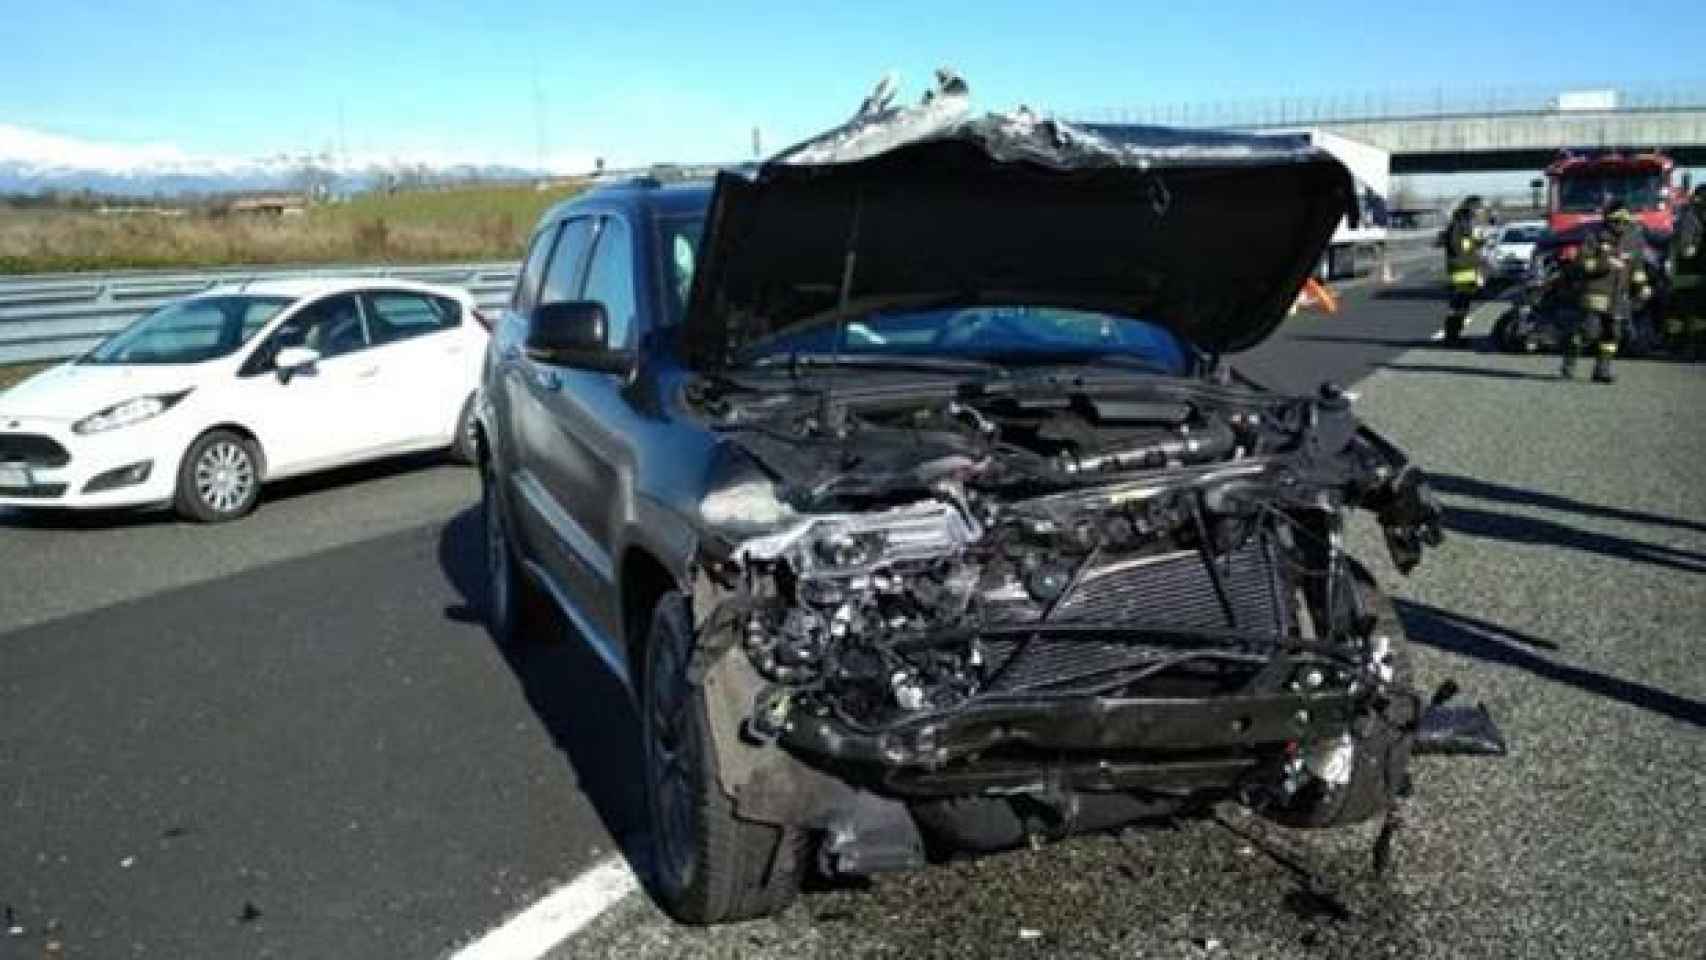 Así quedó el coche de Douglas Costa tras el accidente. Foto: Corriere.it